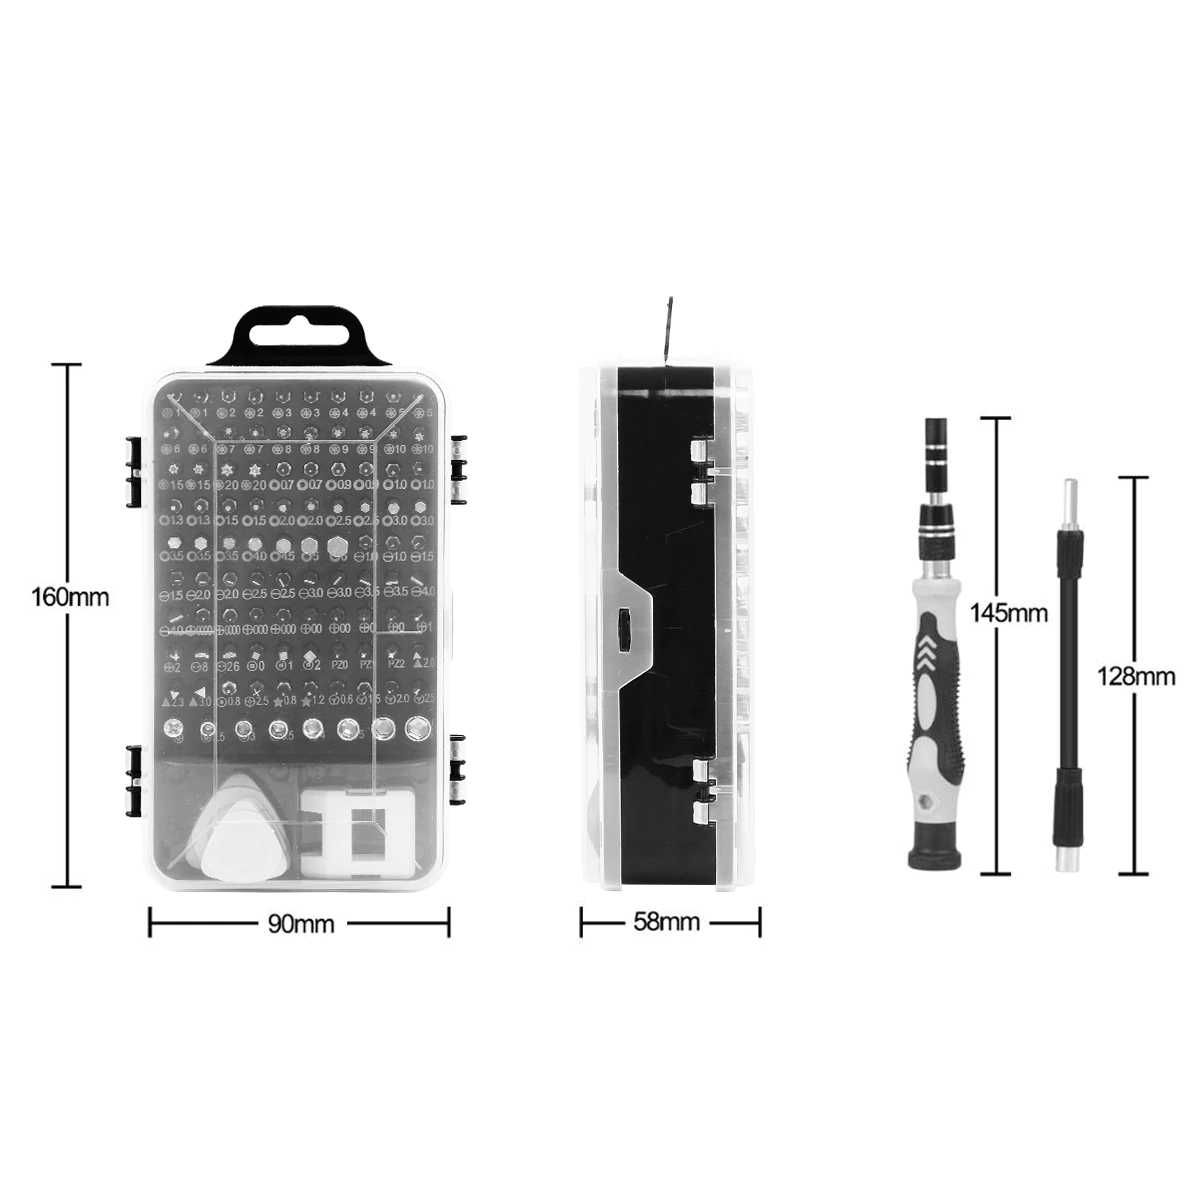 PORTES GRATIS ferramentas kit chave de fendas reparação de telemóveis